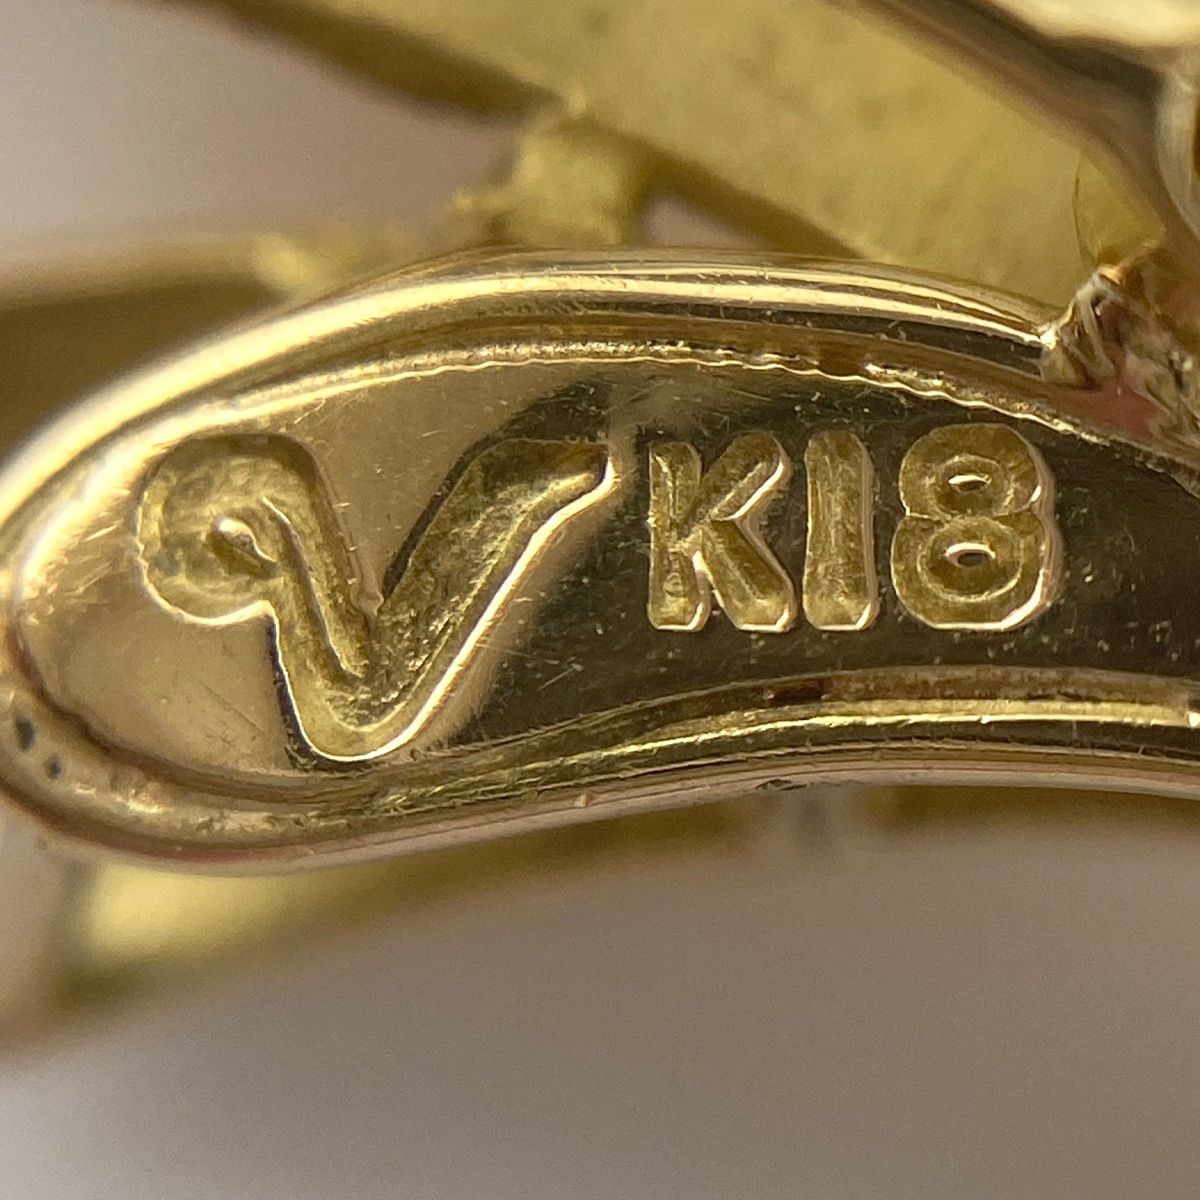 パール デザインネックレス K18 イエローゴールド ペンダント 真珠 